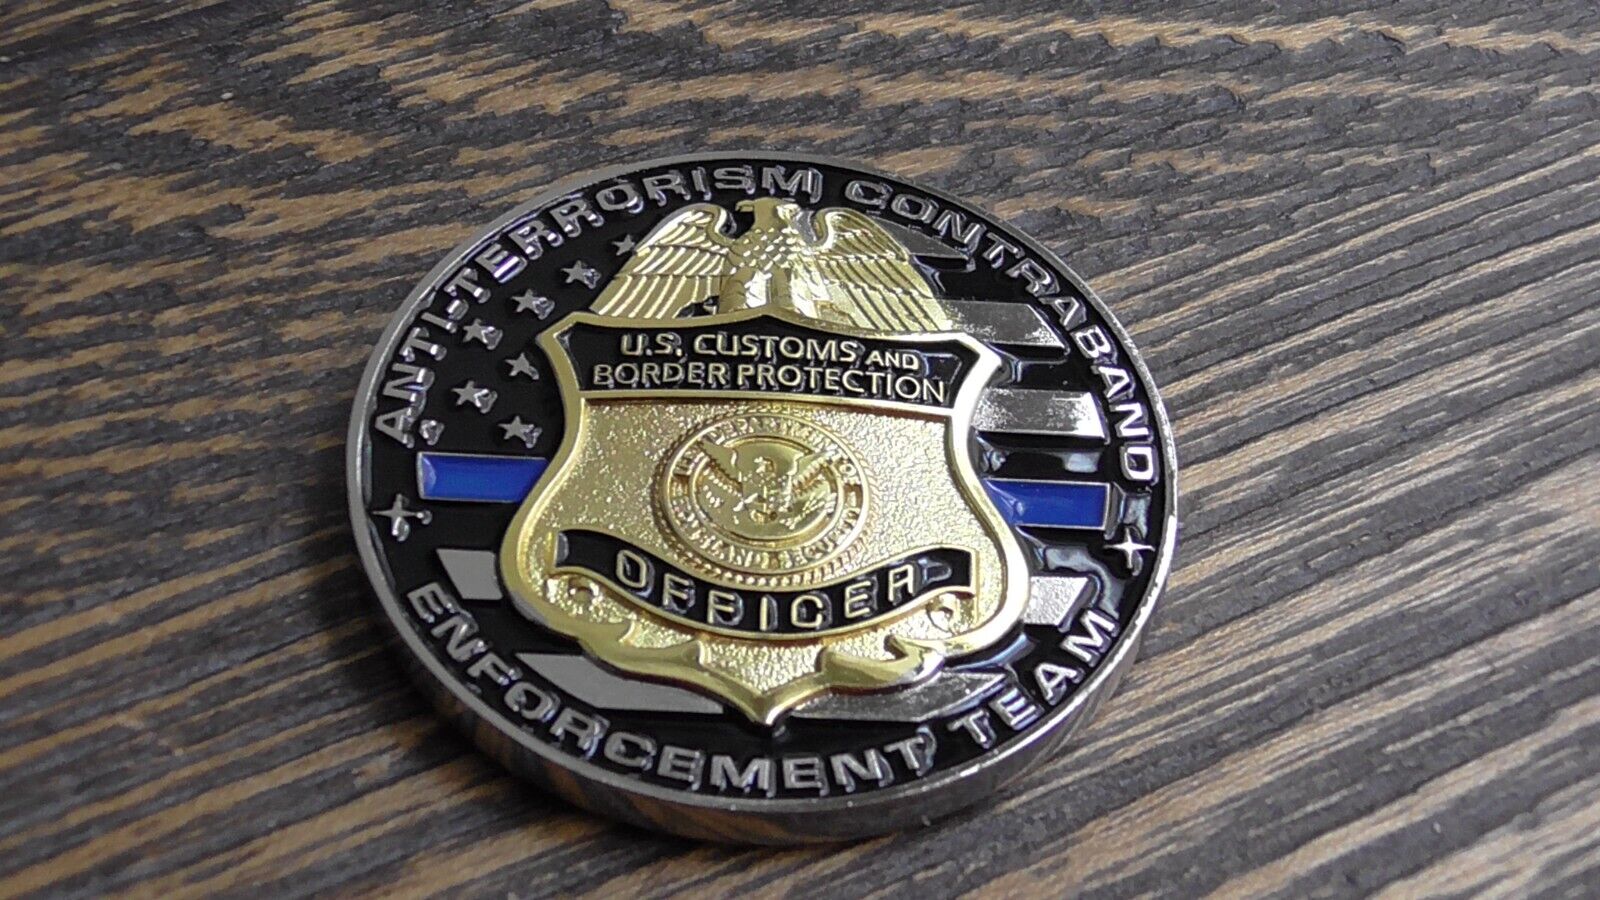 CBP Anti-Terrorism Contraband Enforcement Team Dulles VA Challenge Coin #238R